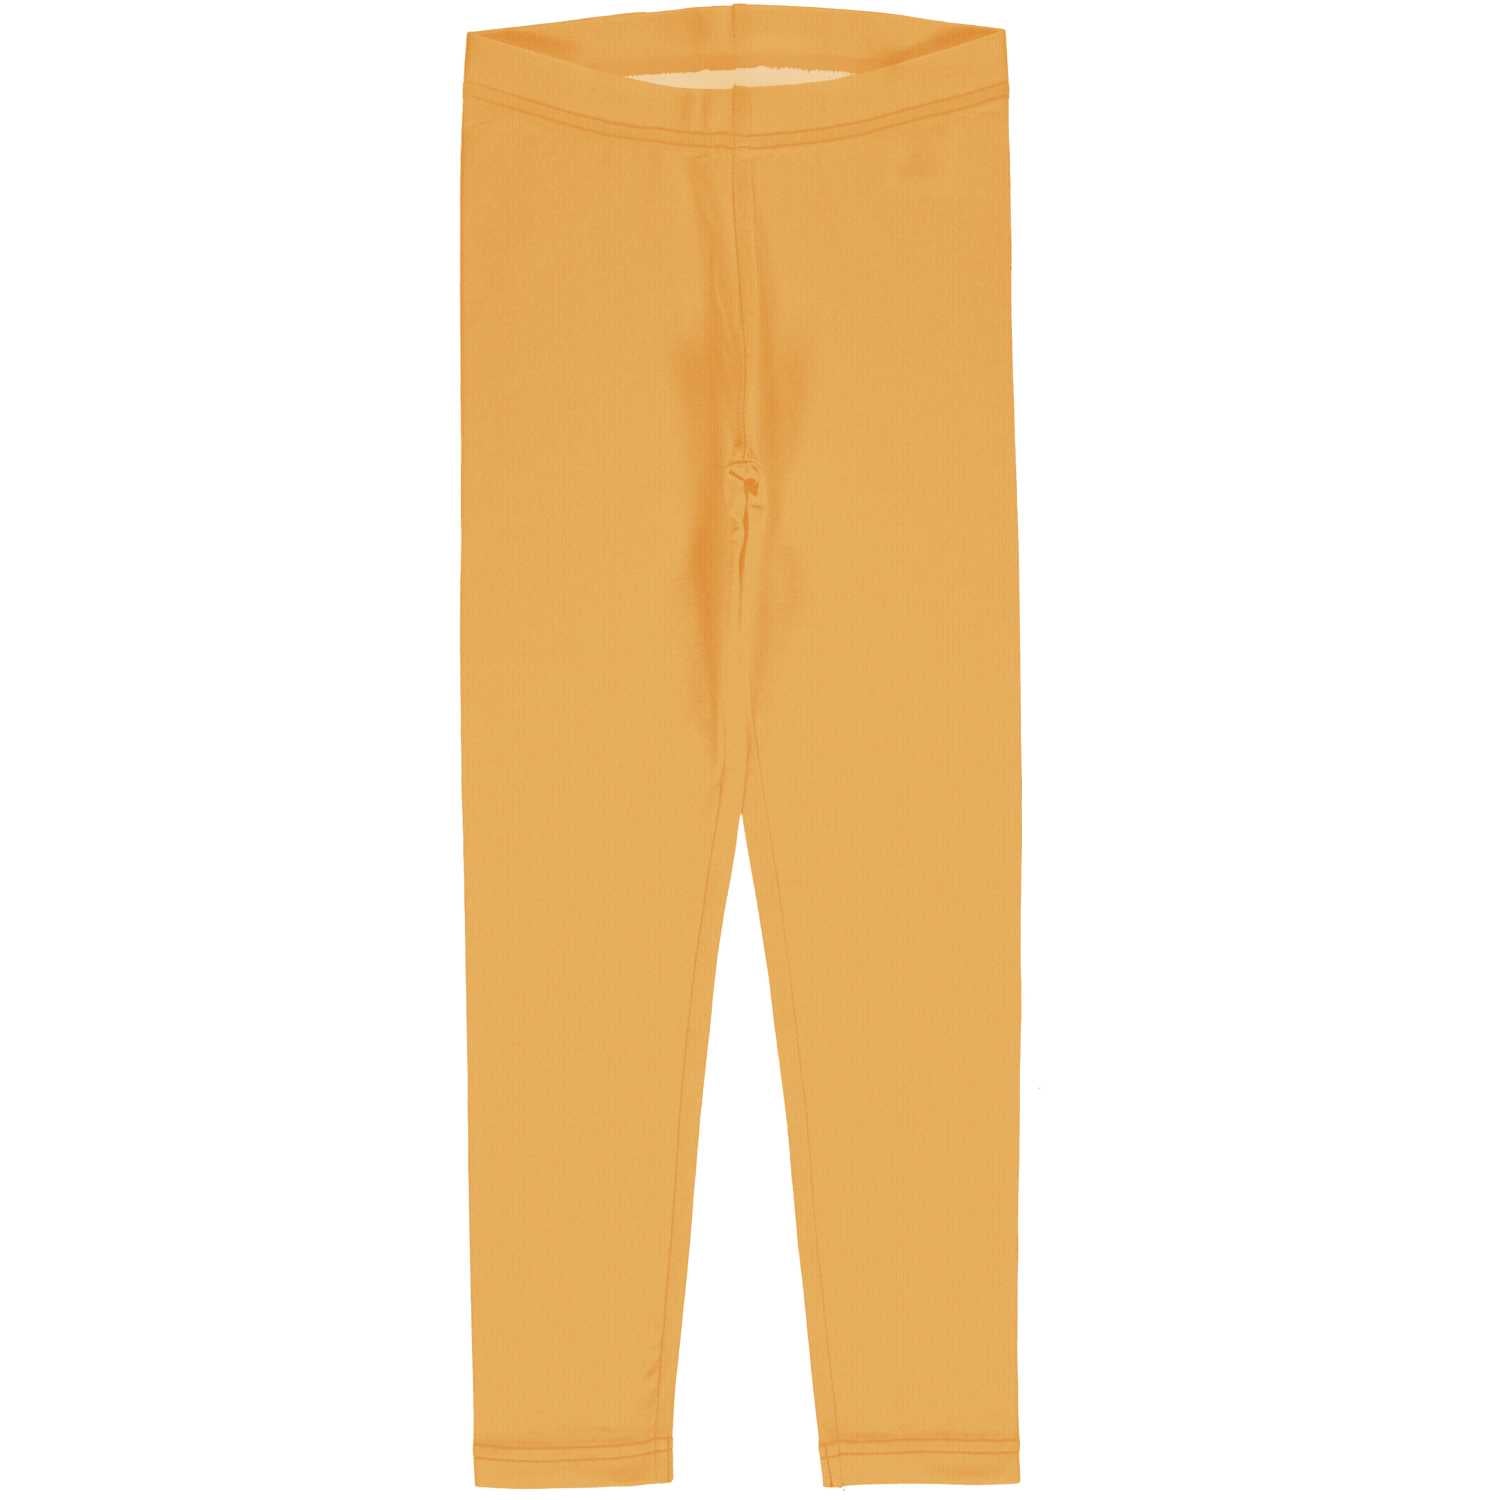 Maxomorra Solid Leggings Dxbas12-Sxbas10 Yellow Clothing 3-4YRS / Yellow,5-6YRS / Yellow,7-8YRS / Yellow